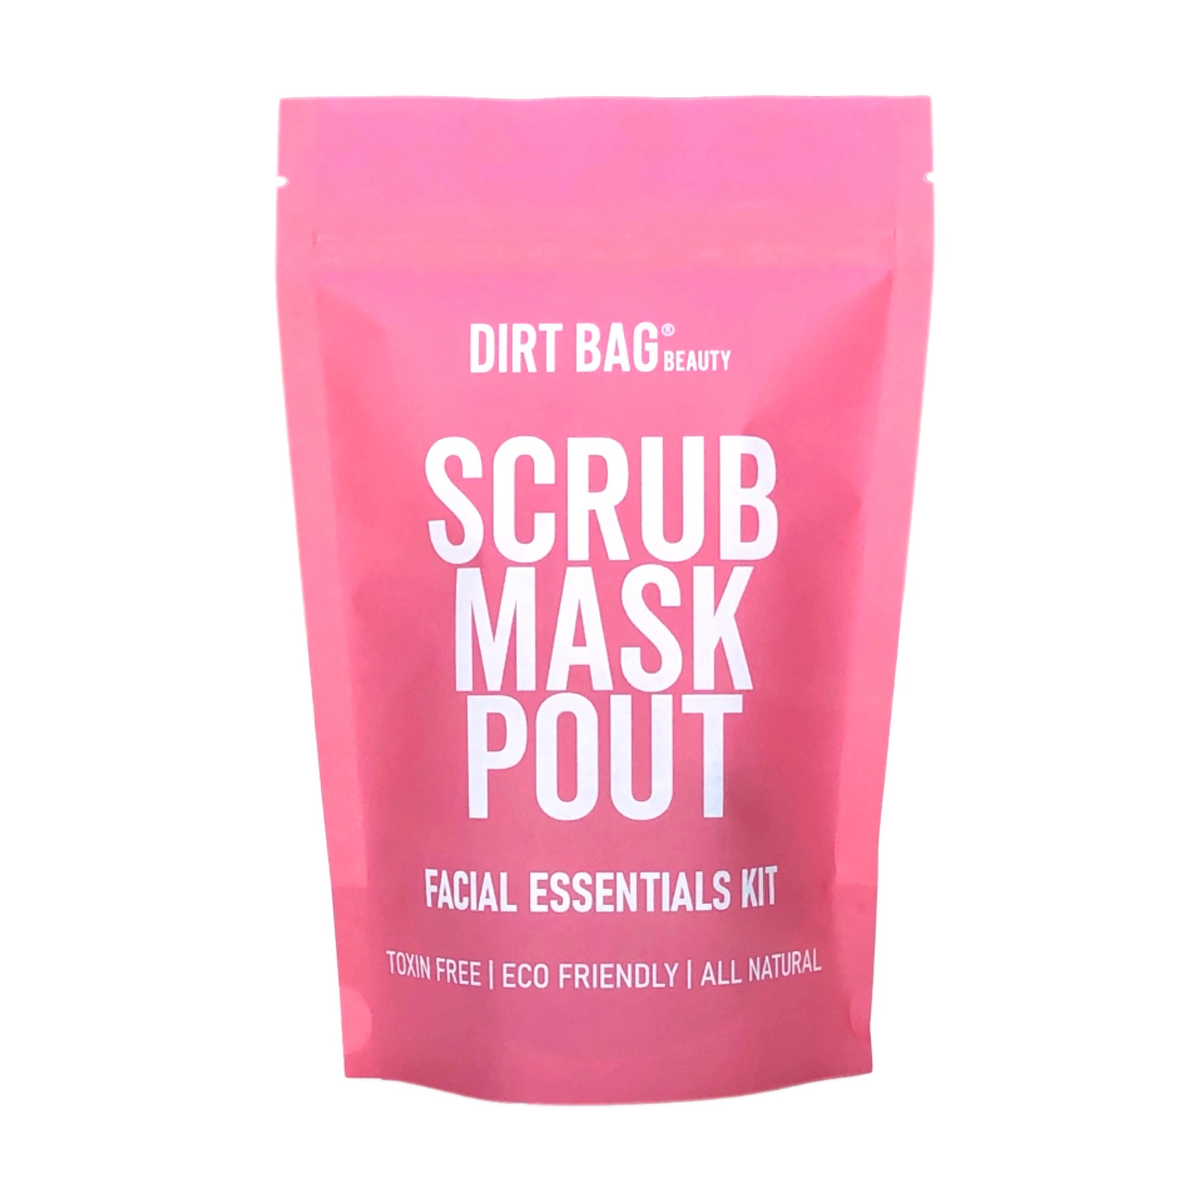 Dirt Bag Vegan Facial Kit -Facial Scrub, Facial Mask, Lip Mask, Mixing Bowl